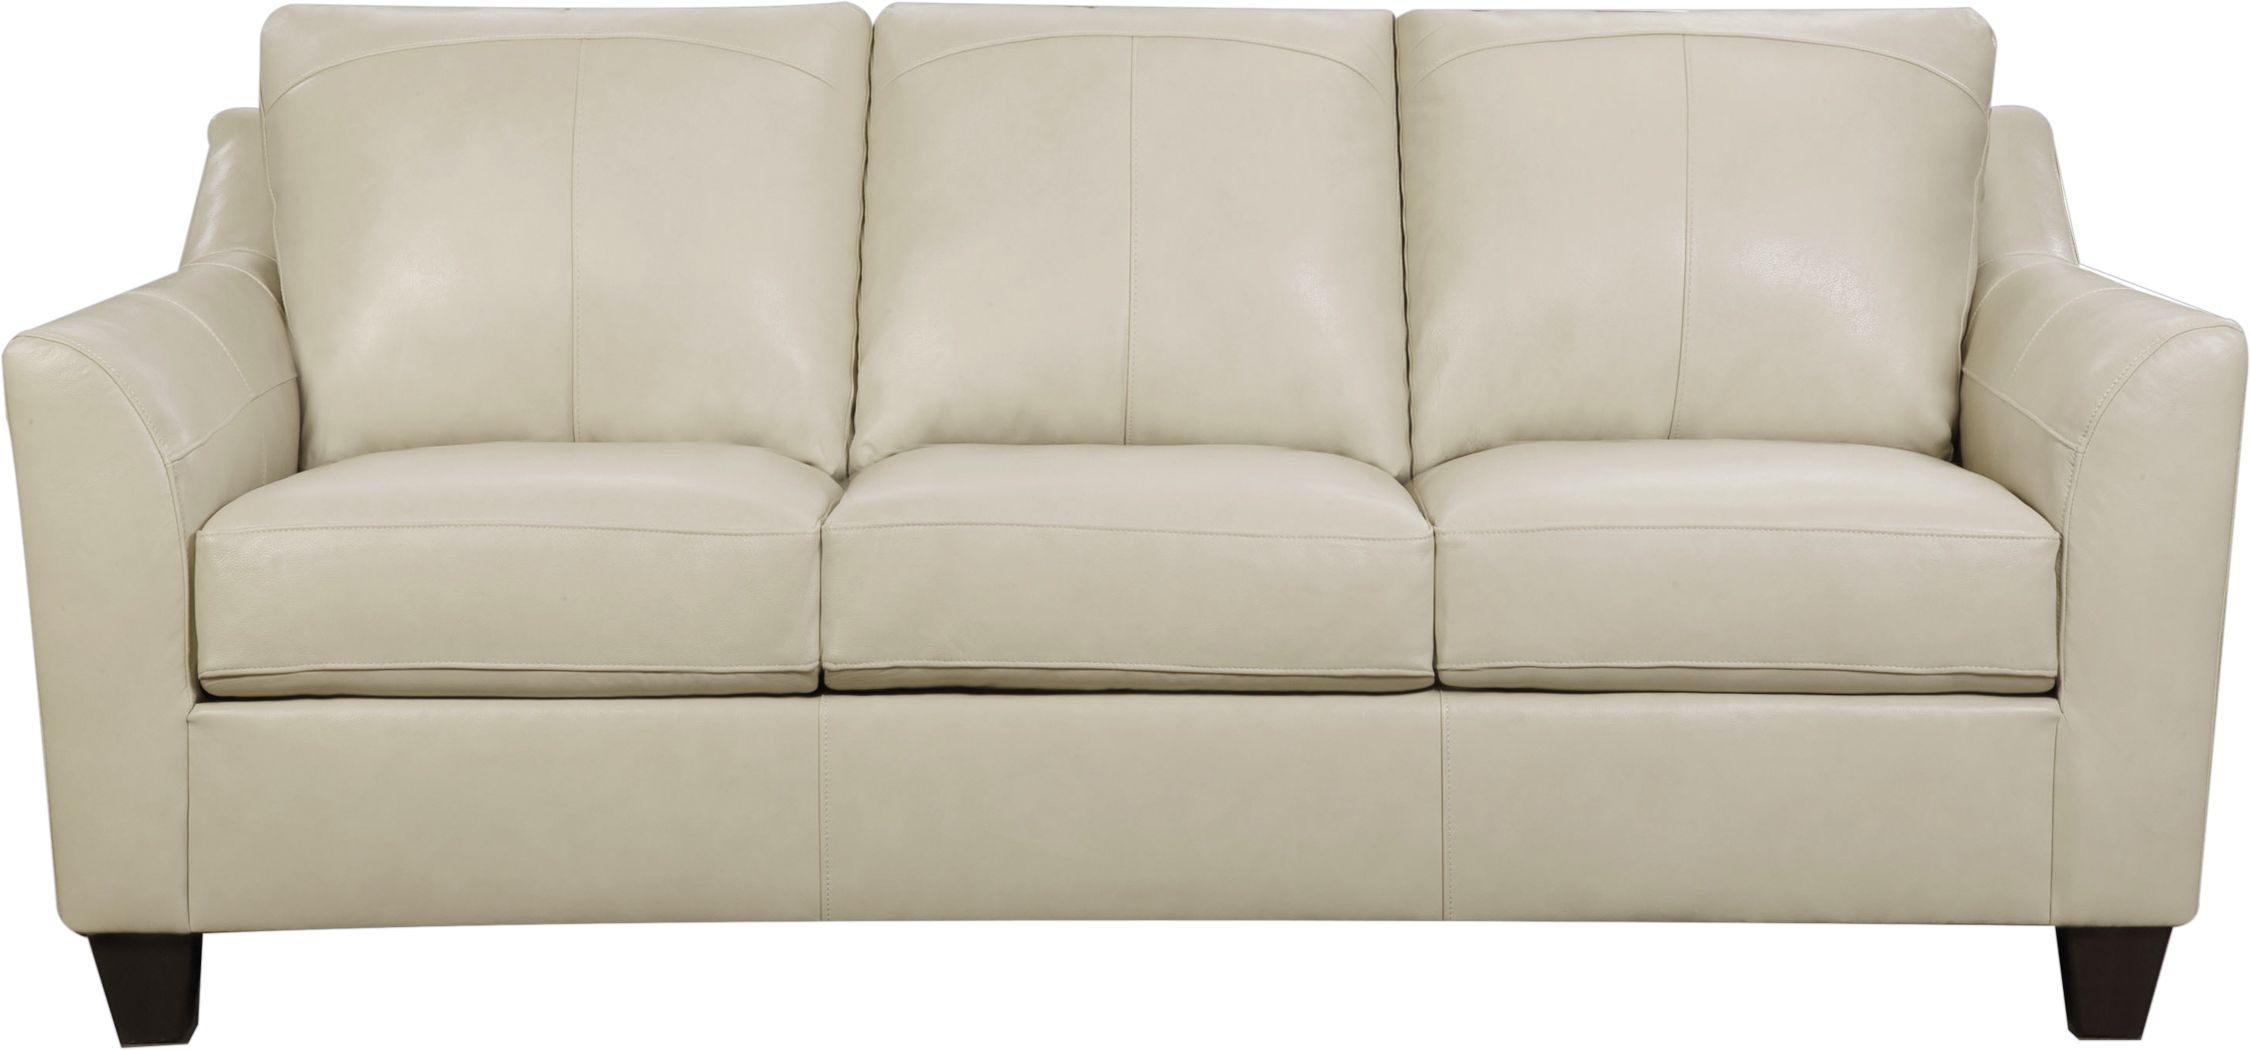 teramo 3-piece leather sofa